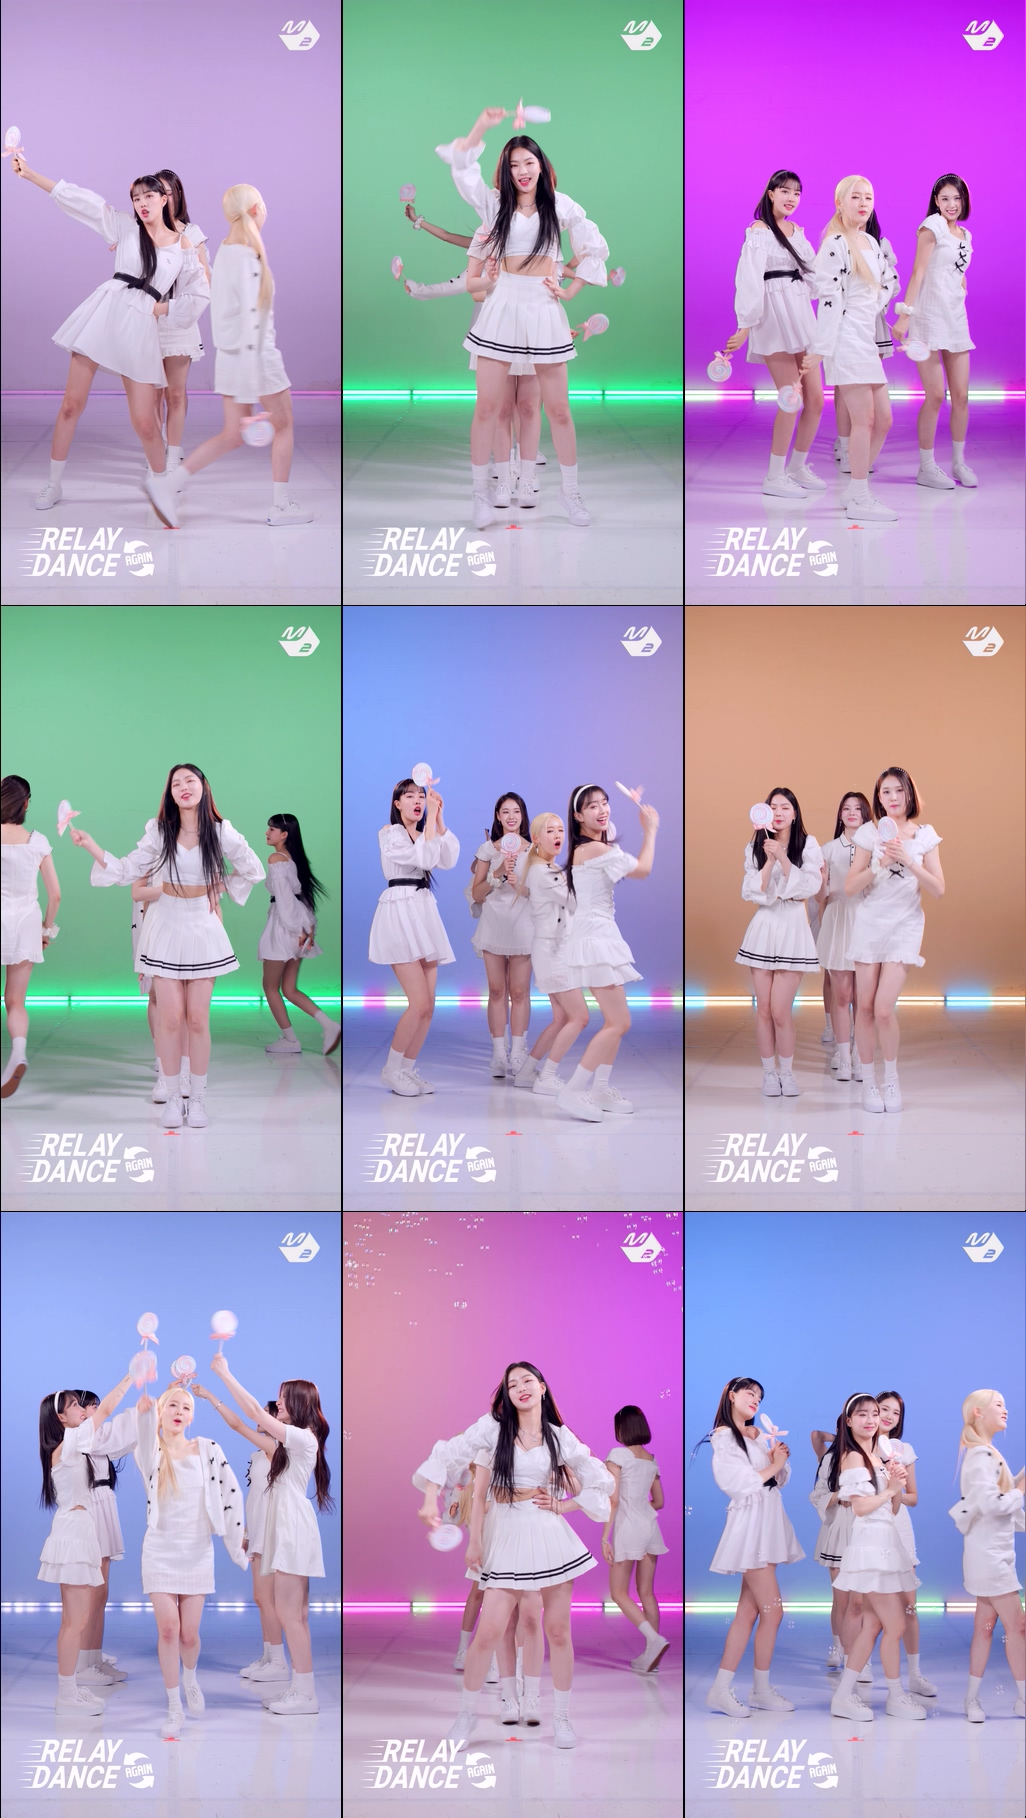 [舞蹈接力] STAYC(스테이씨) – Kissing You (Original song by. Girls’ Generation) (4K)插图1